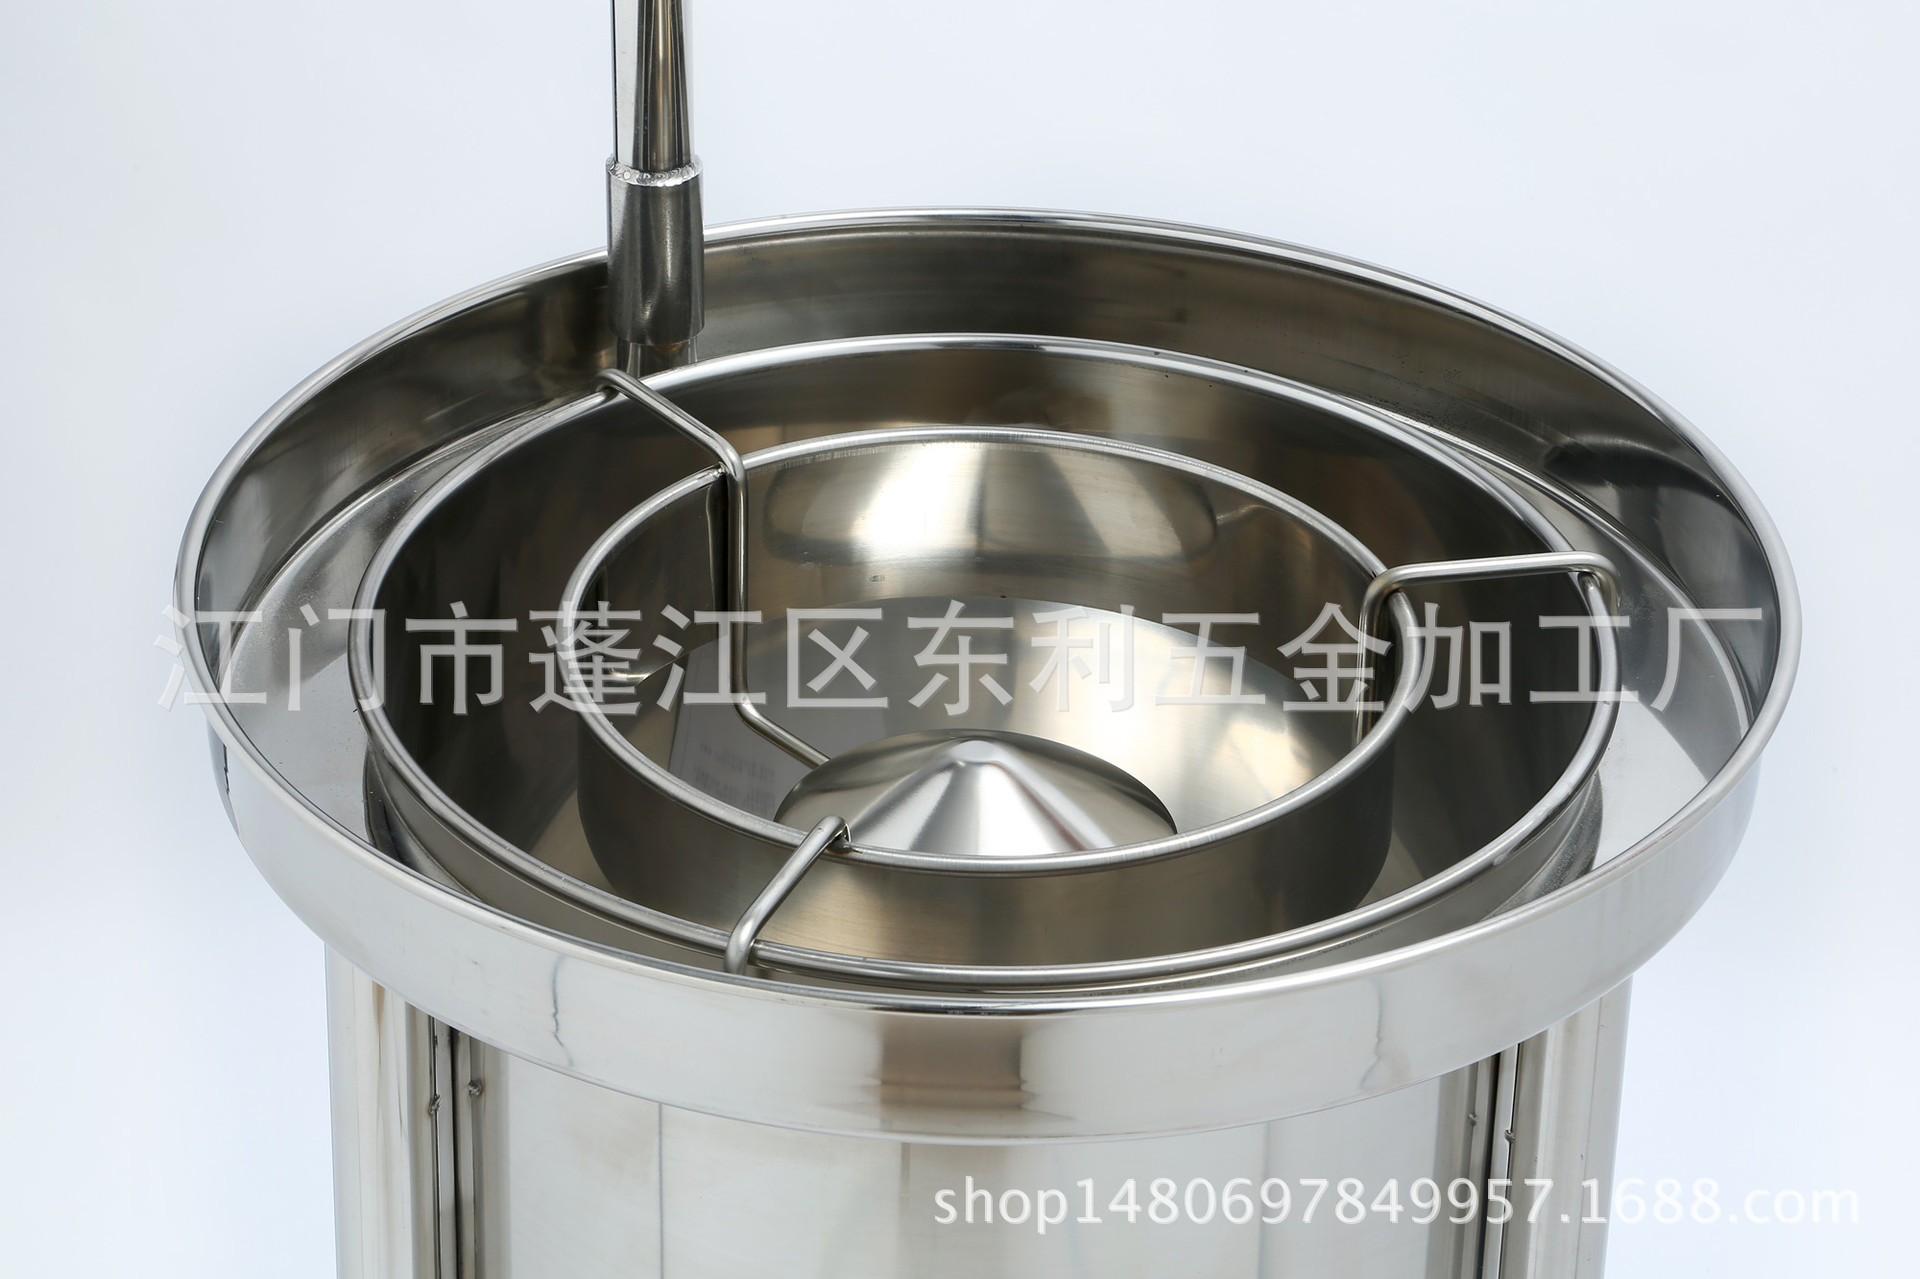 水压式洗米机03